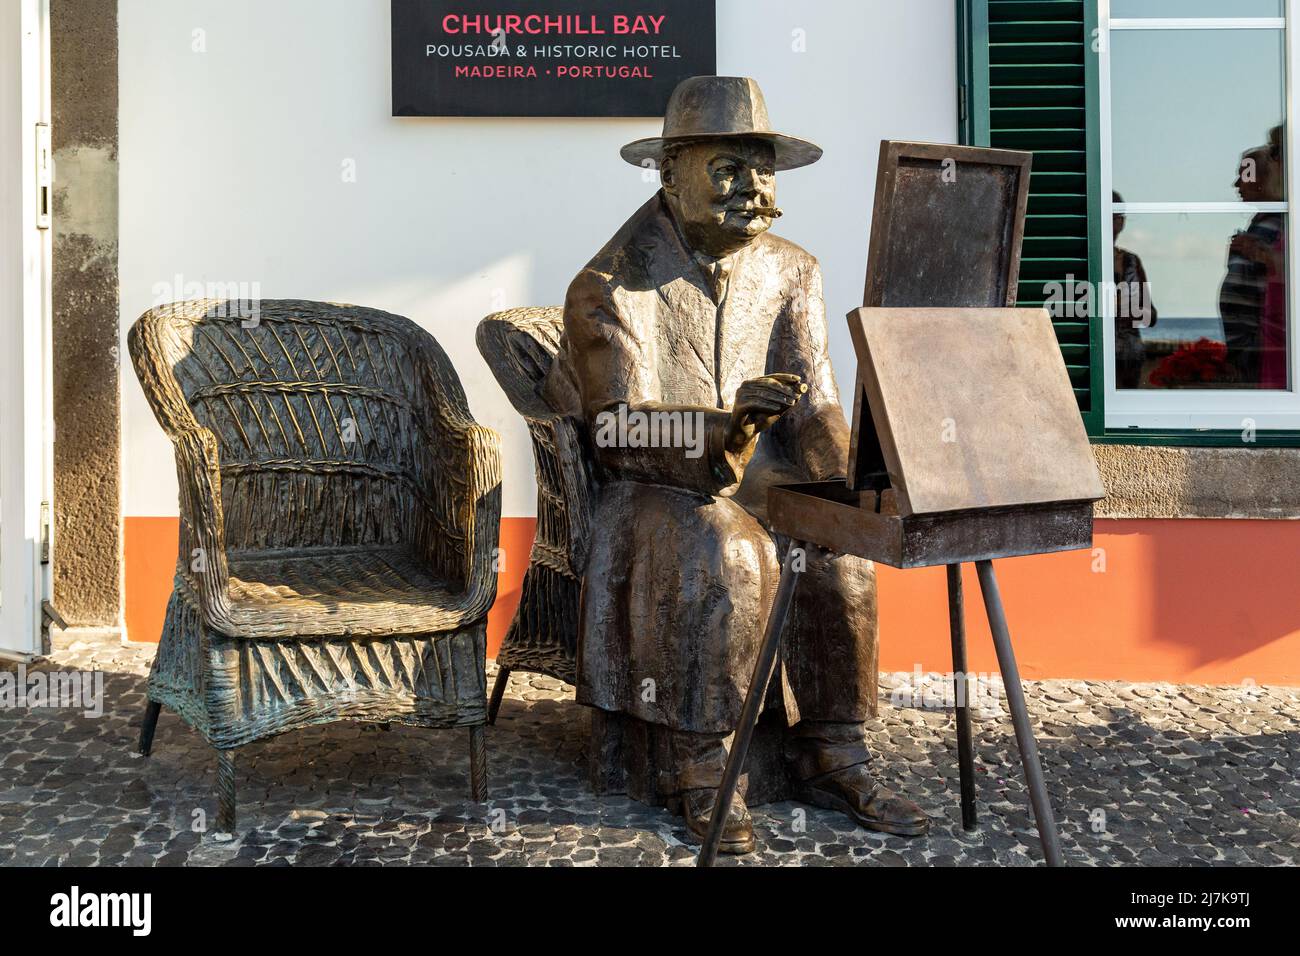 CAMARA DE LOBOS, PORTUGAL - 27 AOÛT 2021 : c'est un monument à Winsinon Churchill, qui était occupé à peindre. Banque D'Images